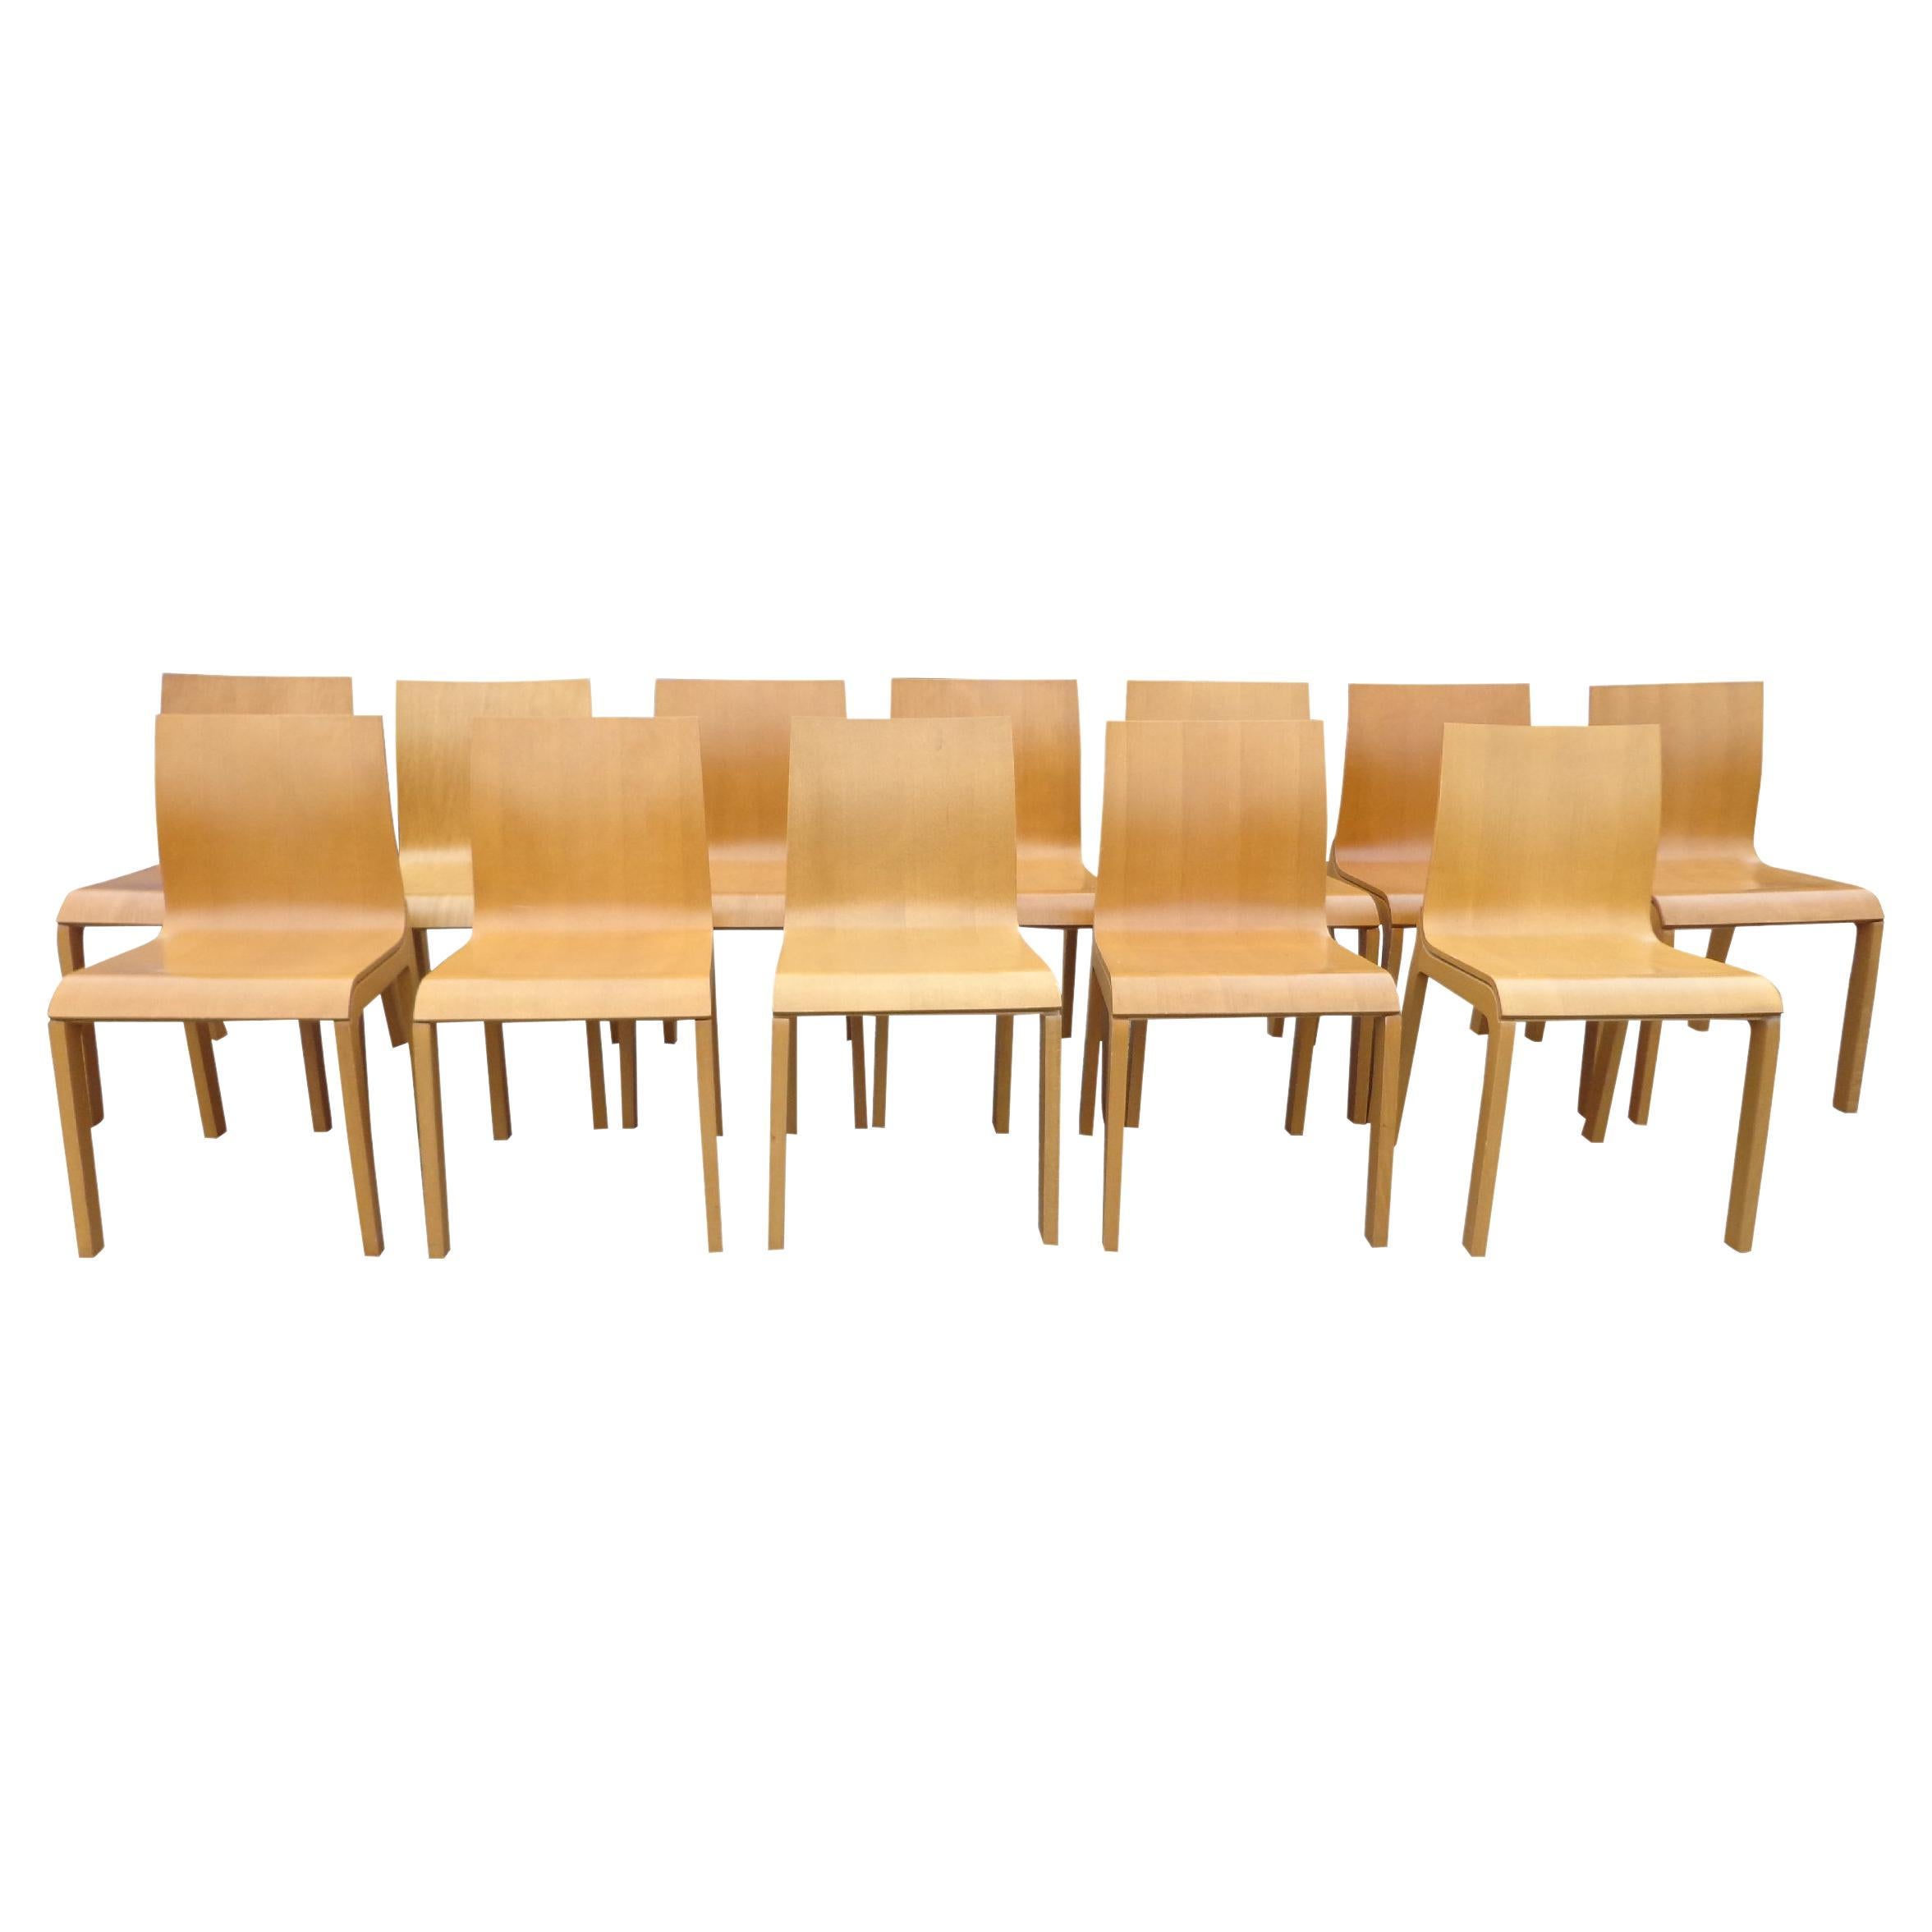 Satz von 8 italienischen Bross-Käfer-Esszimmerstühlen von Enzo Berti

Der von Enzo Berti entworfene Stuhl Beetle bietet ein schlichtes Design, das zu jedem Esstisch oder jeder Frühstücksecke passt. Der Formholzrahmen aus Buche verleiht diesem